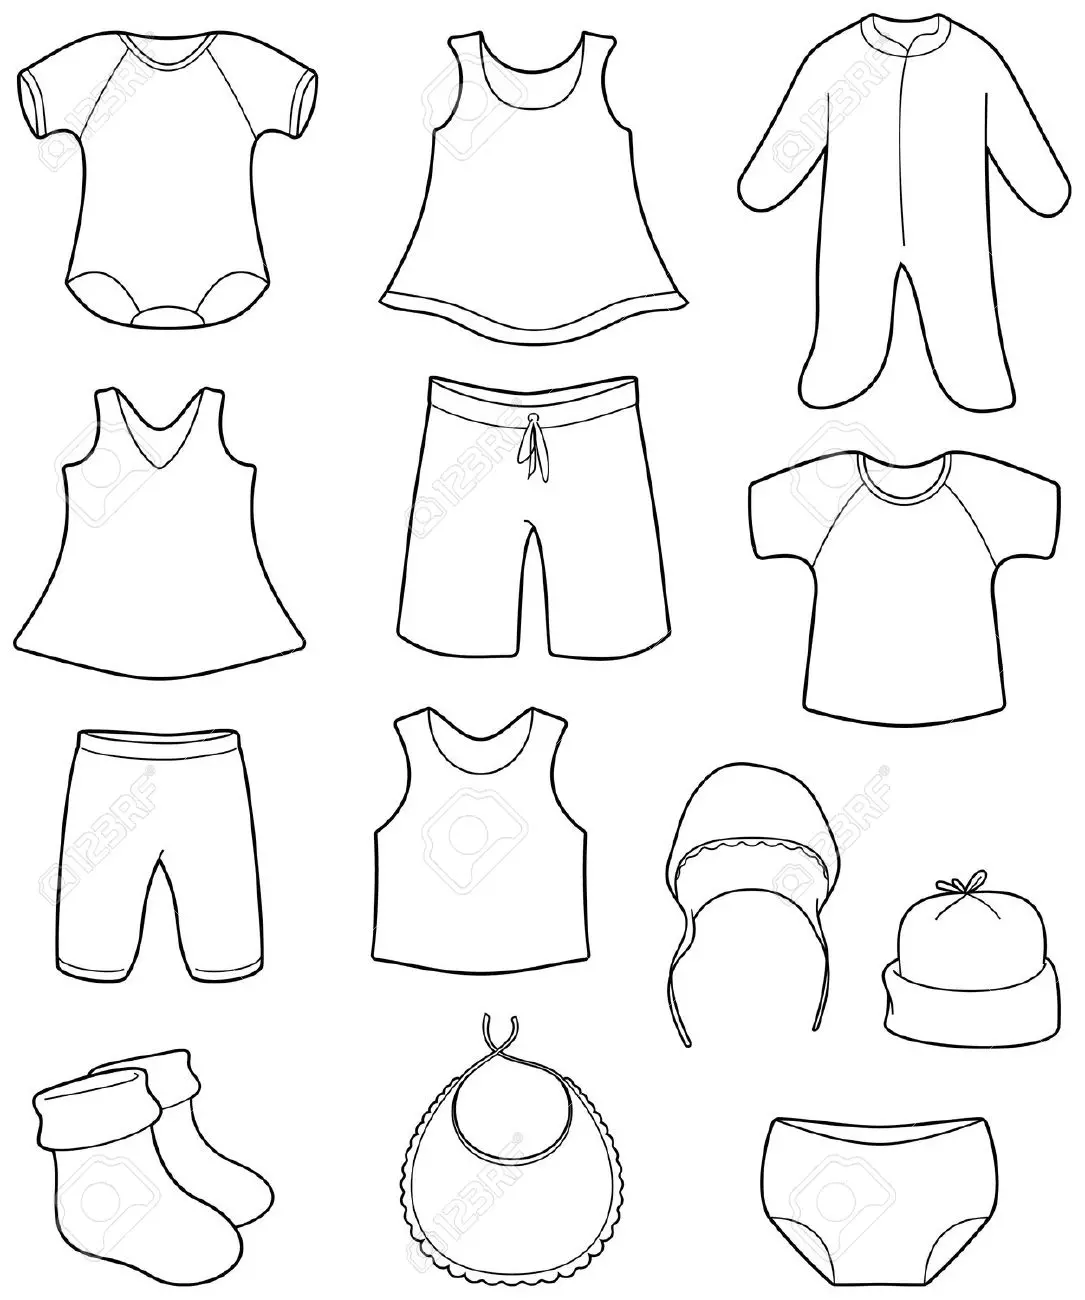 Bộ sưu tập tranh tô màu quần áo cho bé trai và bé gái tập tô màu  Trường  THPT Lê Ích Mộc